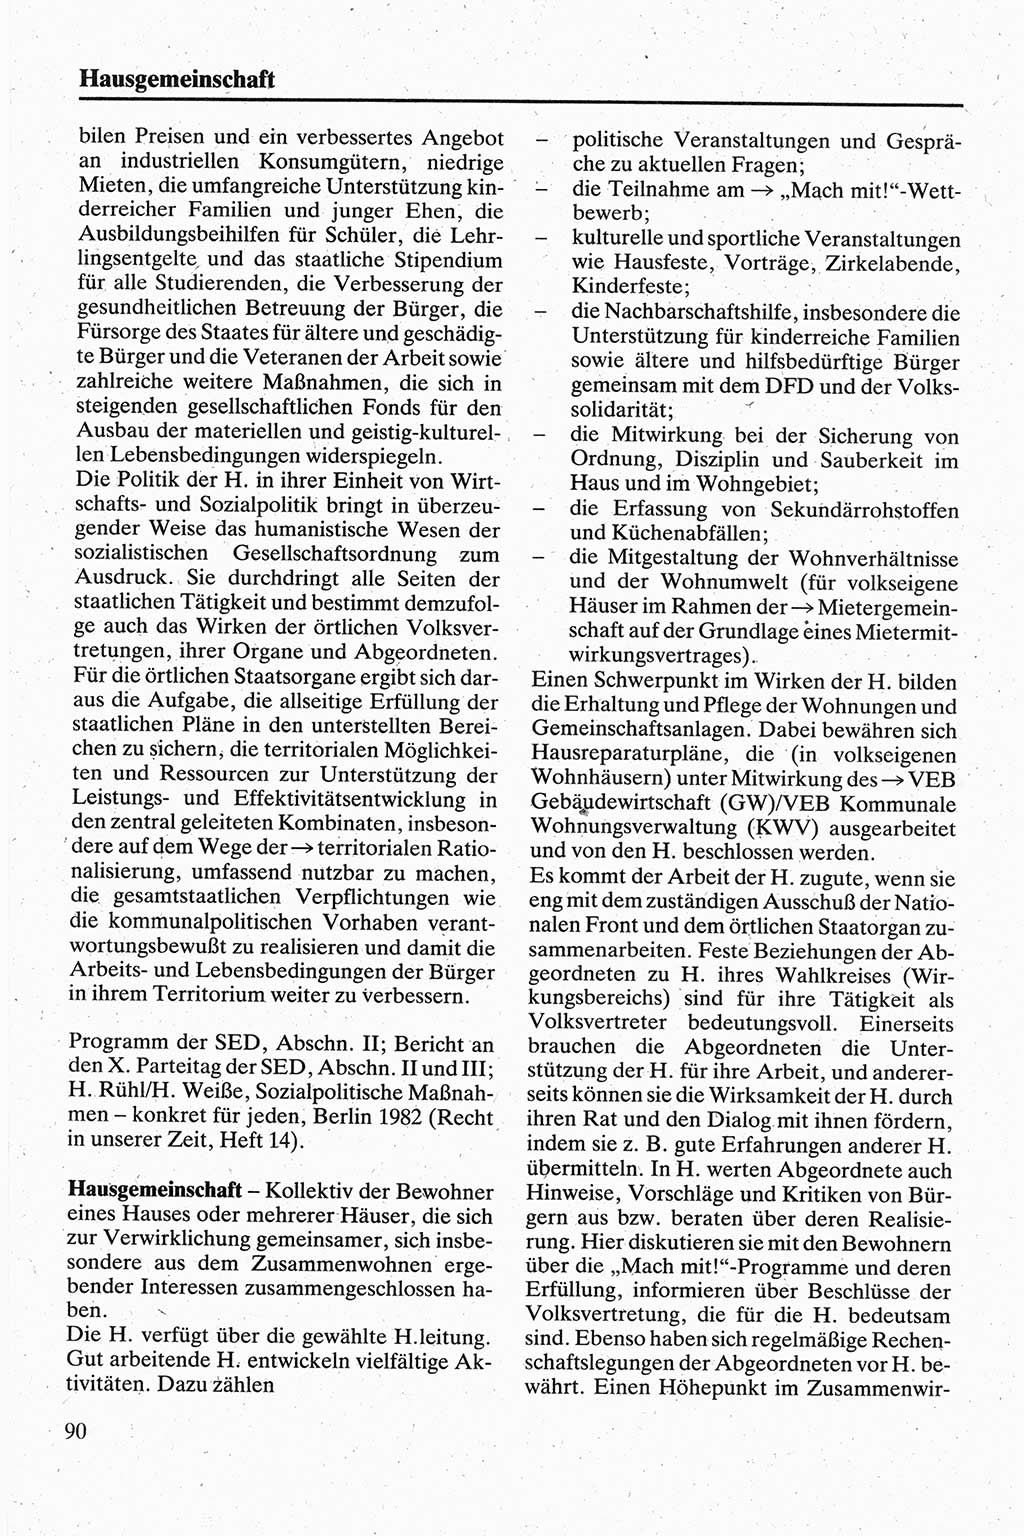 Handbuch für den Abgeordneten [Deutsche Demokratische Republik (DDR)] 1984, Seite 90 (Hb. Abg. DDR 1984, S. 90)